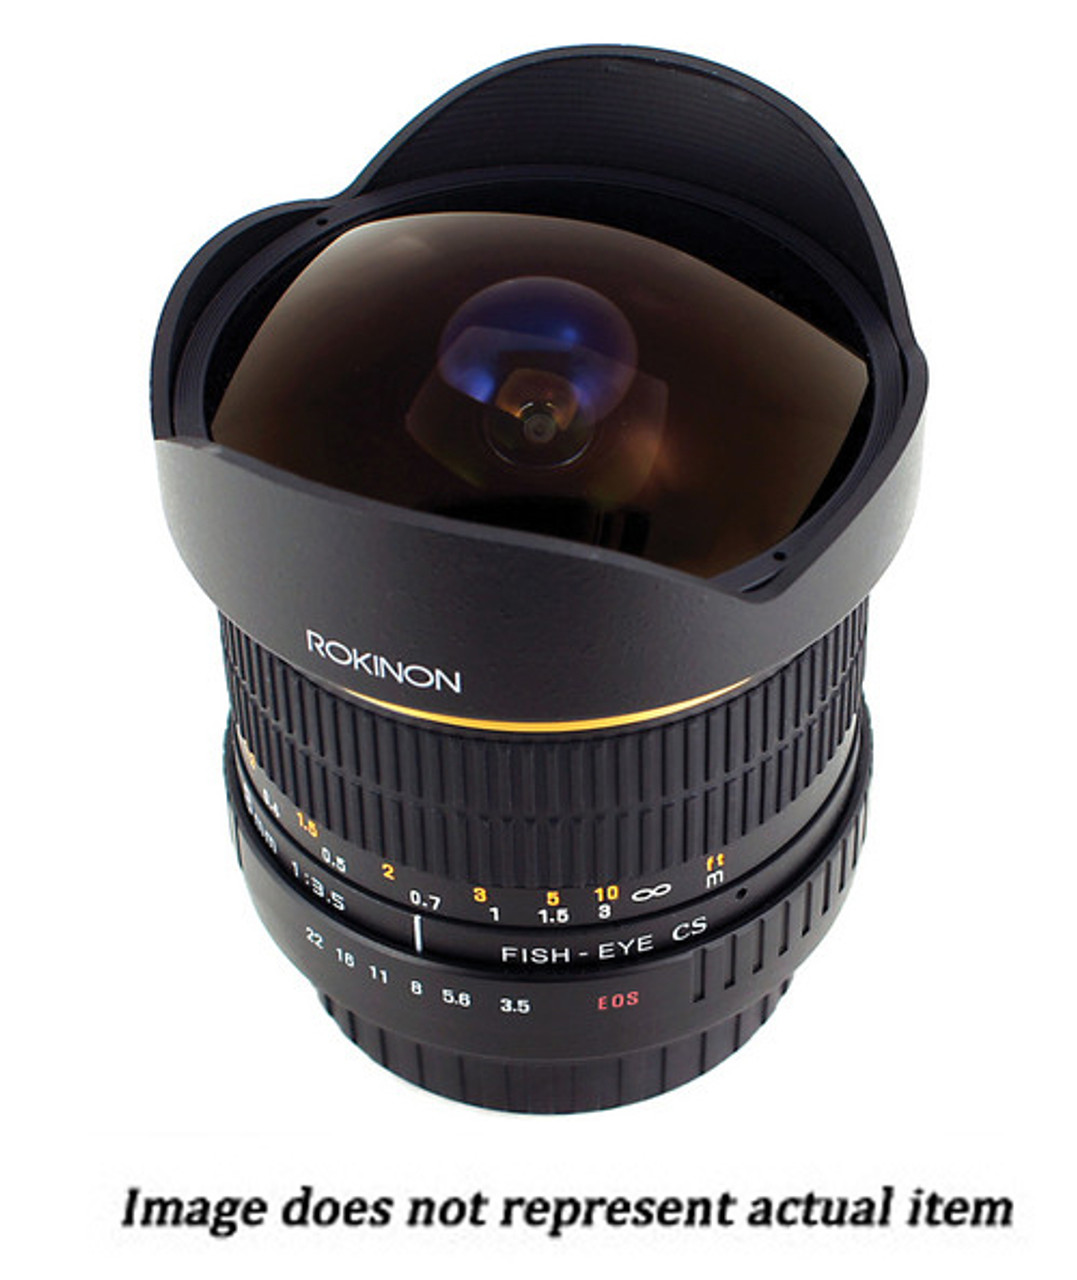 Kreek Aanbevolen vervagen 8mm f/3.5 Fisheye Lens for Canon (USED) - Allen's Camera